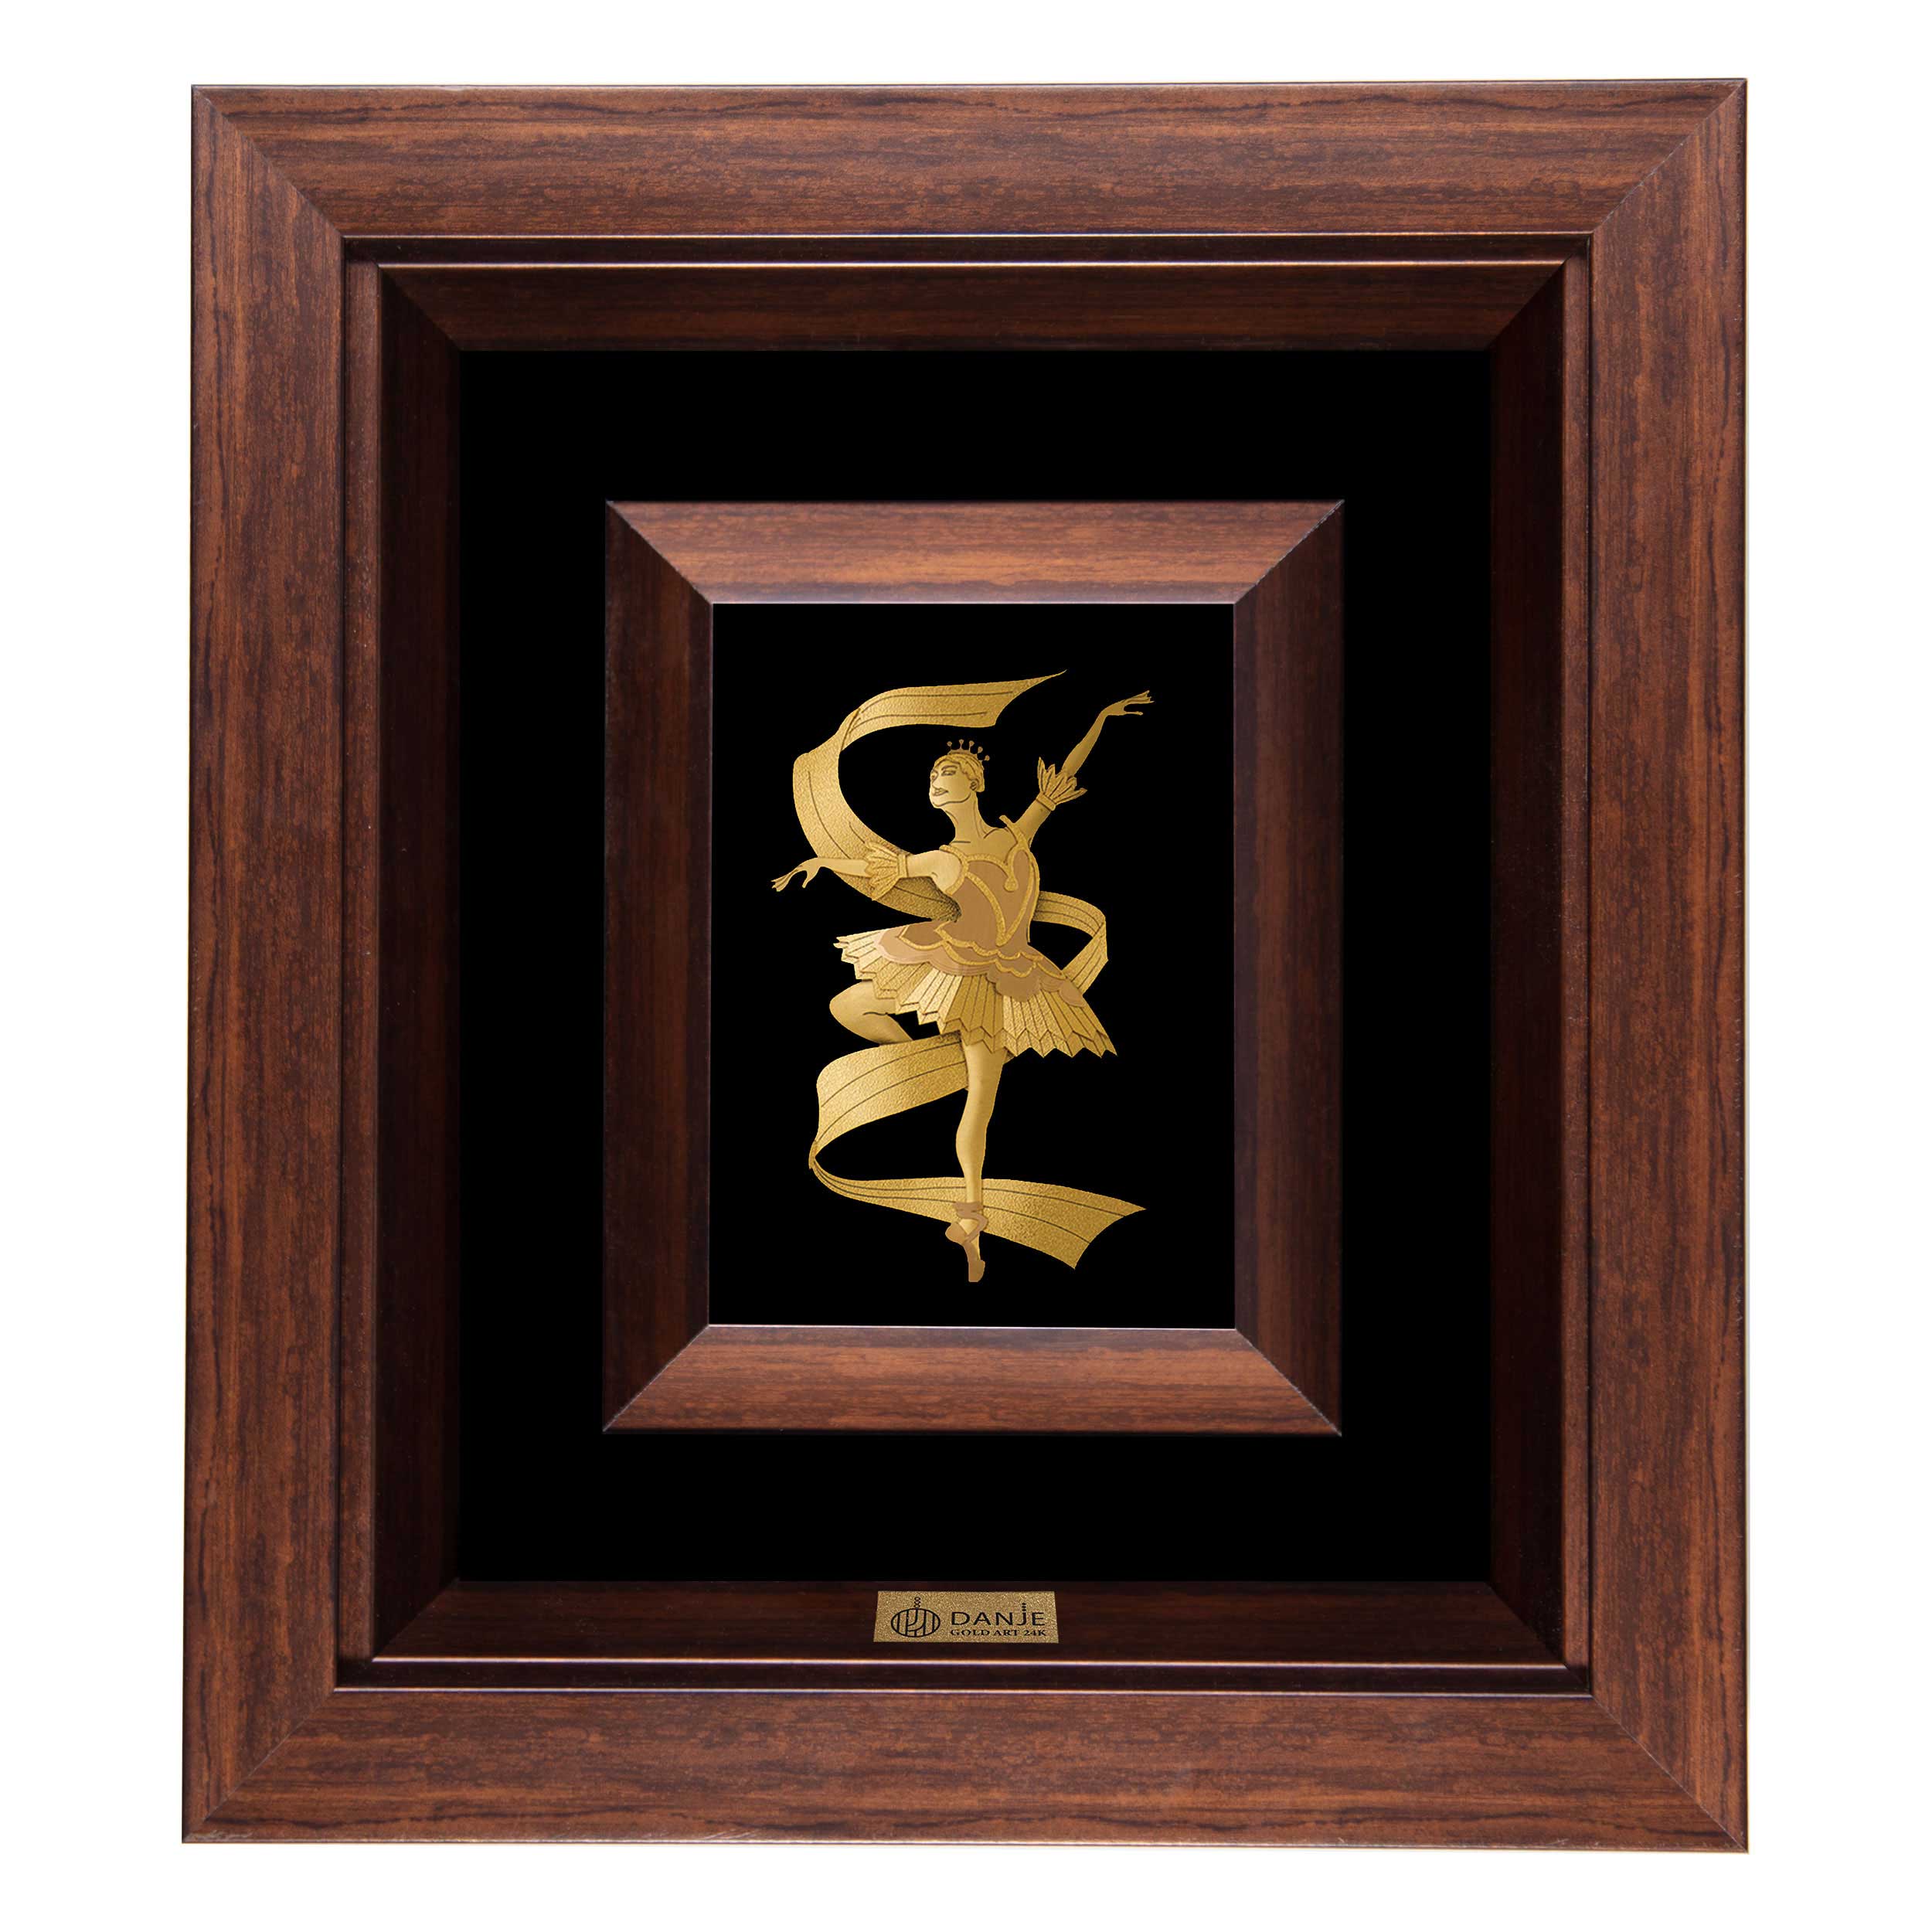 24 carat gold leaf panel with PVC frame, Danjeh ballet dancer design